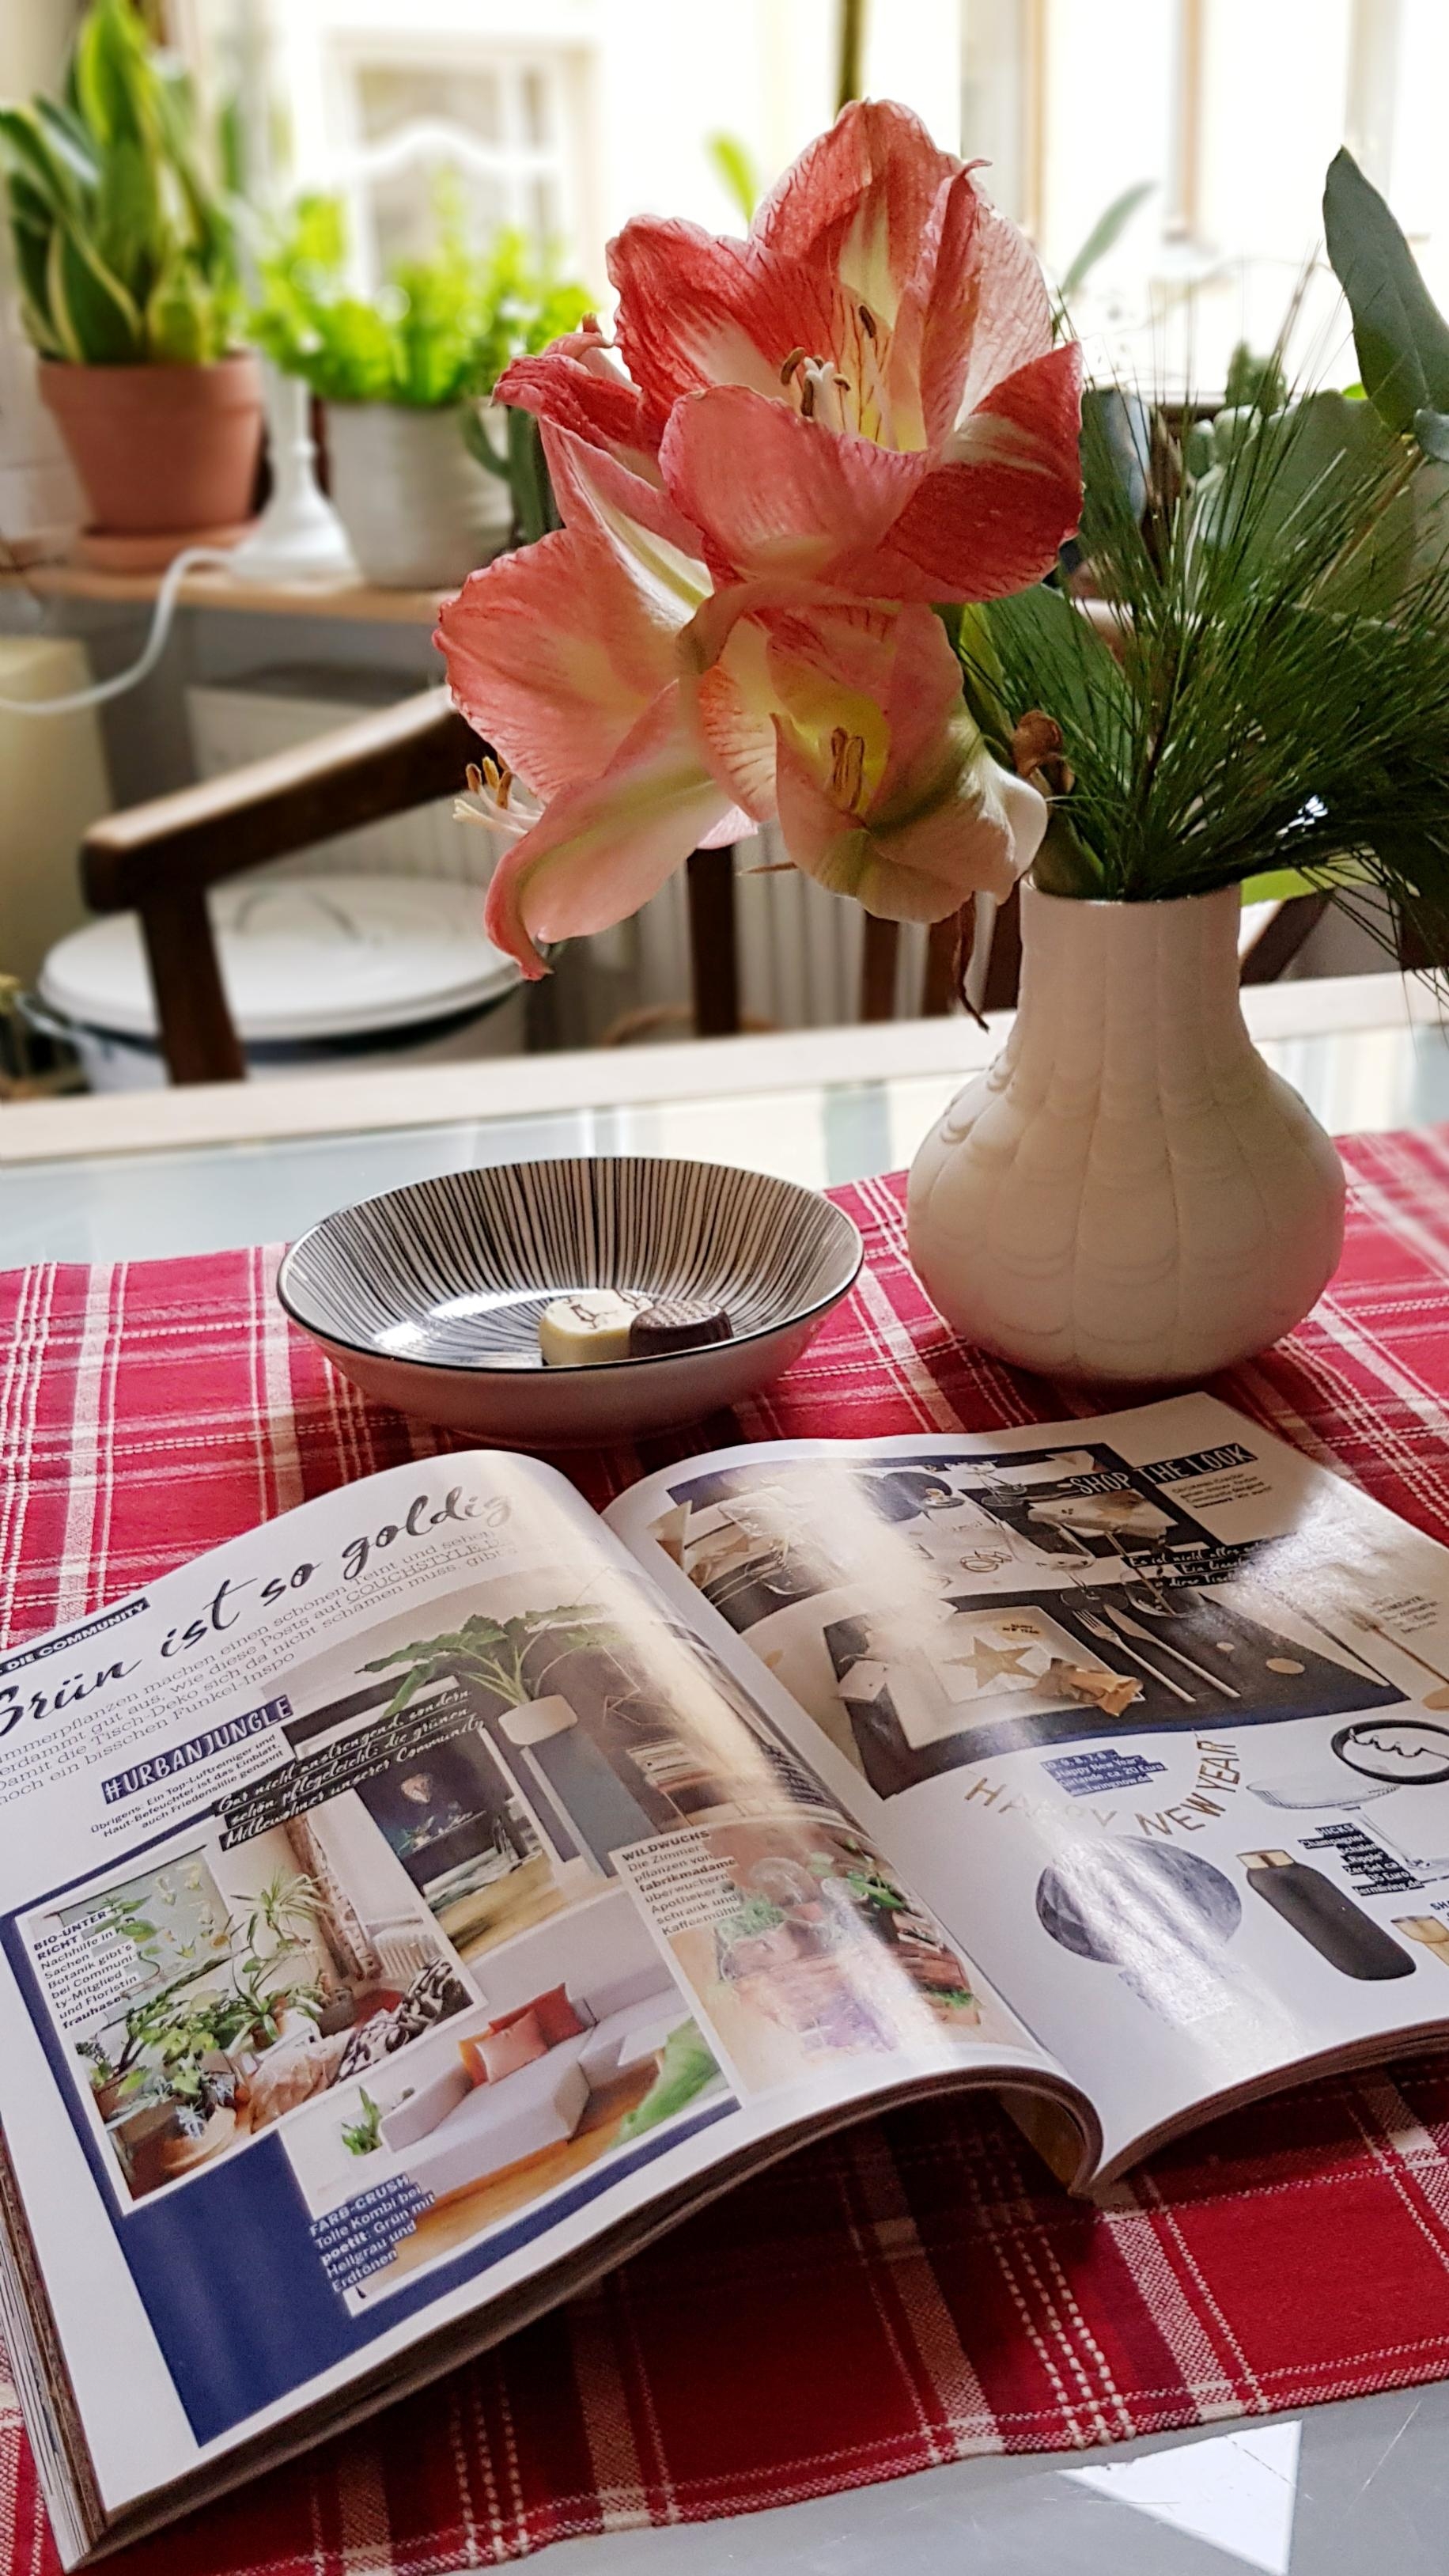 Danke liebe Couch-Redaktion,  das war eine schöne Überraschung mein Bild in der Januar Ausgabe #couch #amaryllis #küche 